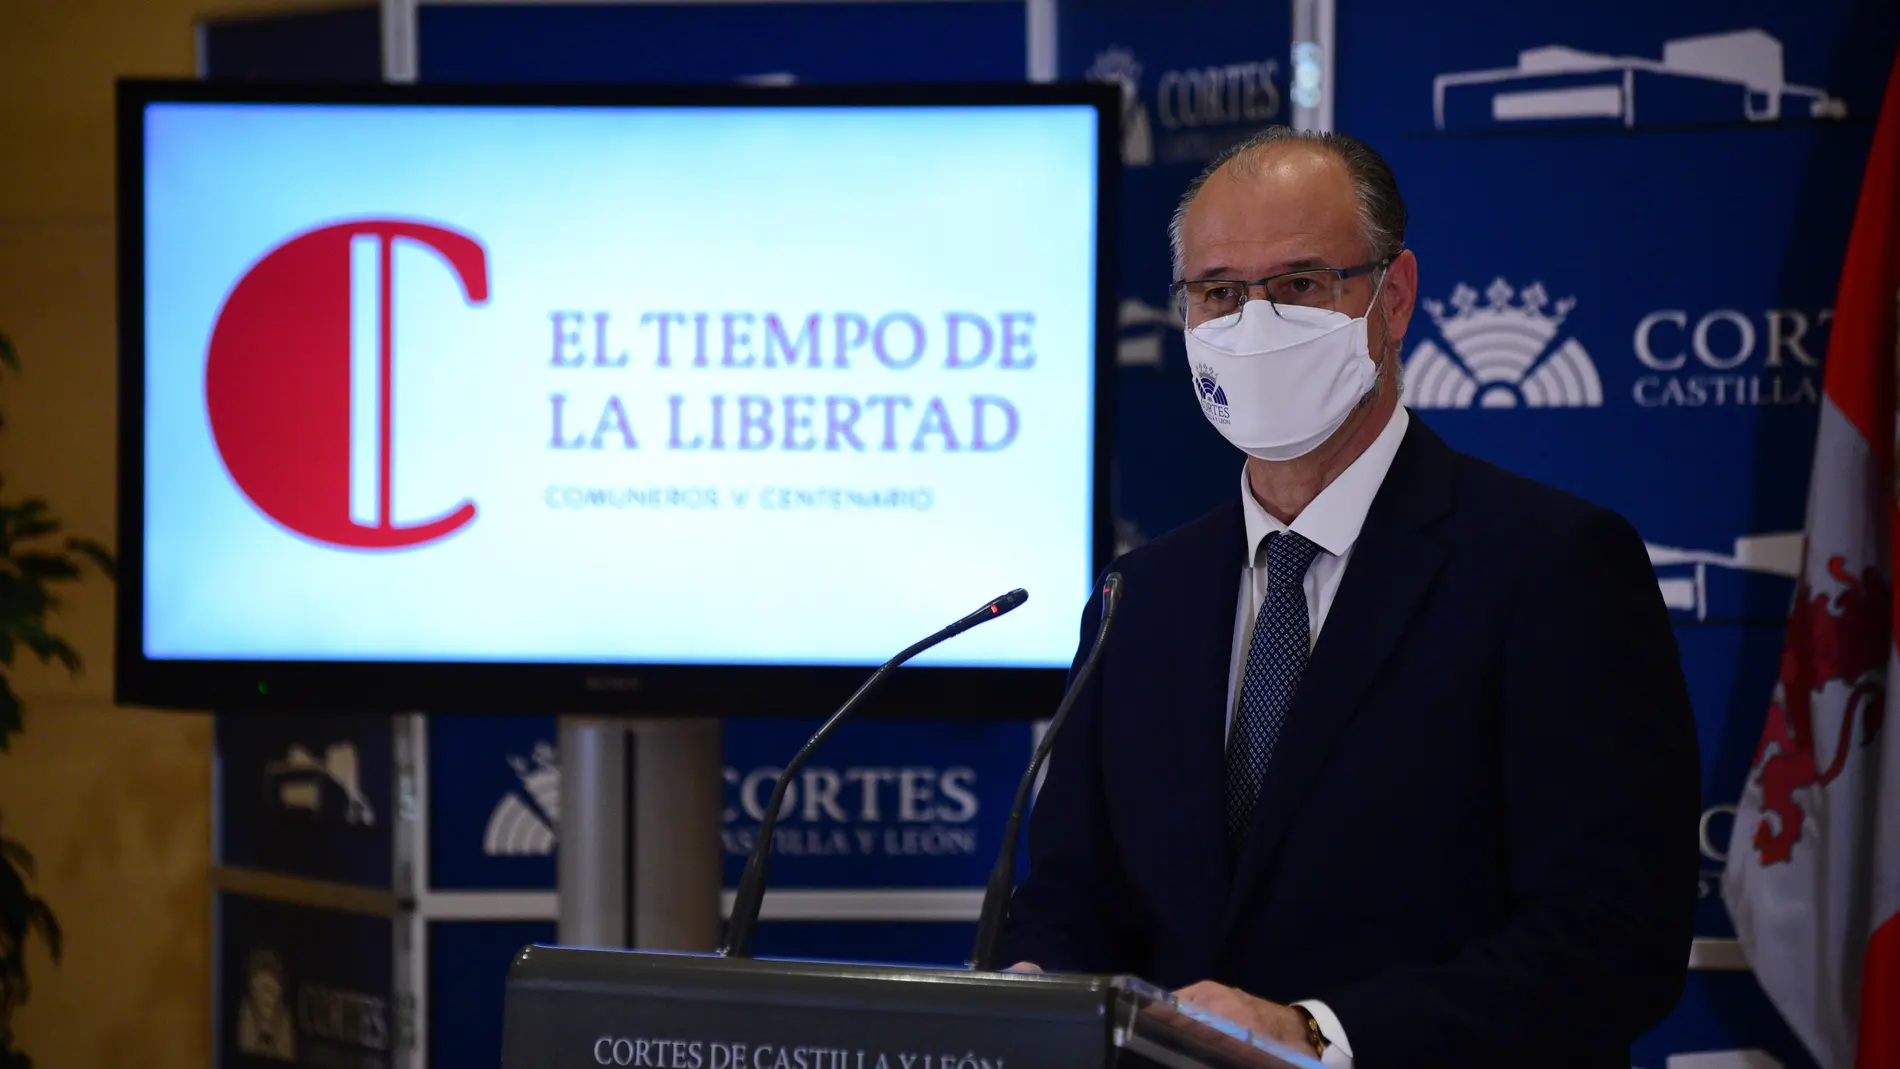 El presidente de las Cortes y de la Fundación Castilla y León, Luis Cortes, presenta la programación del Día de la Comunidad